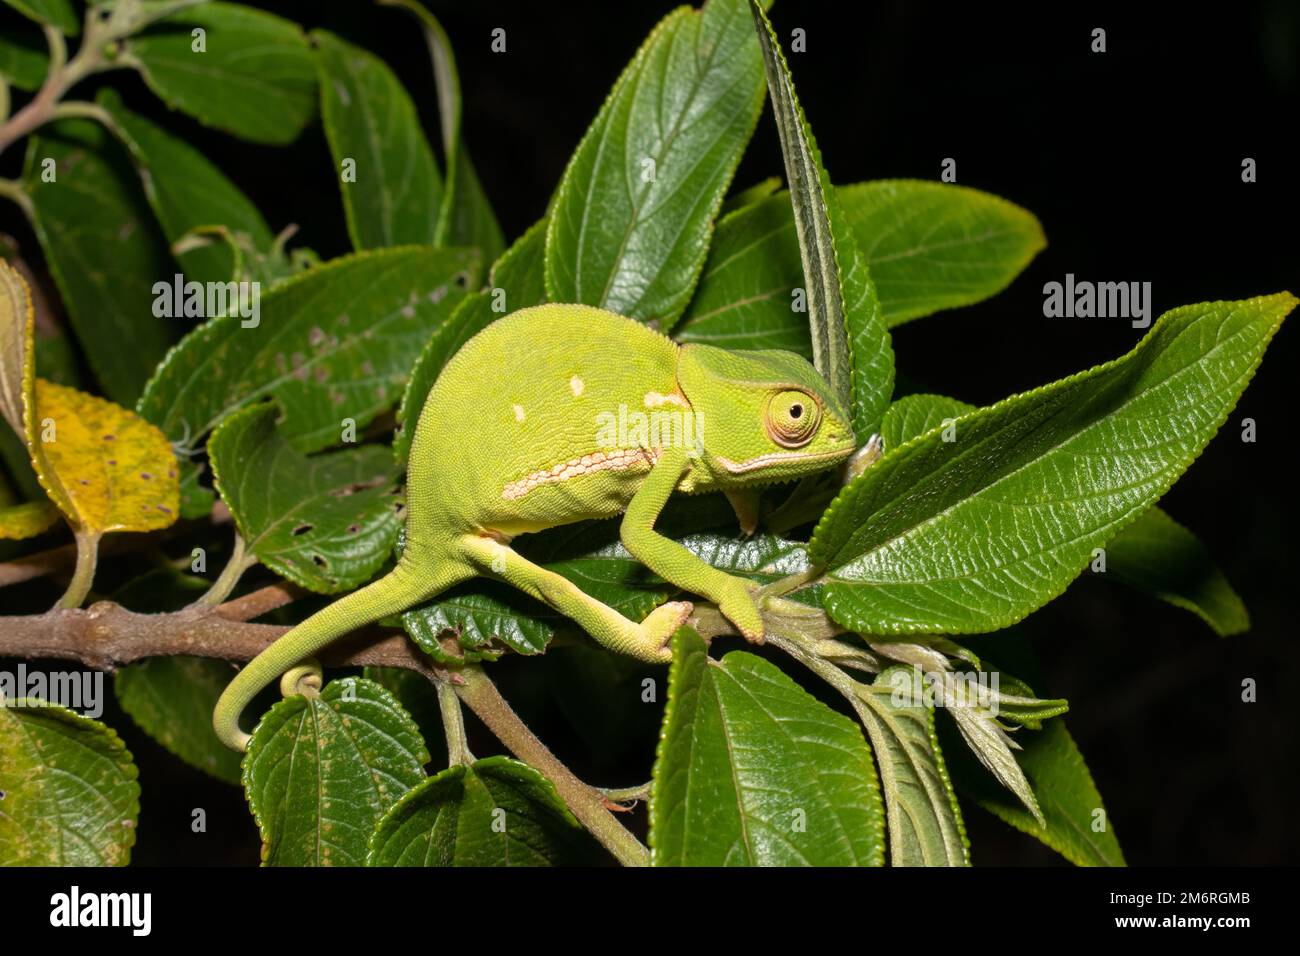 Flap-necked chameleons (Chamaeleo dilepis) Stock Photo